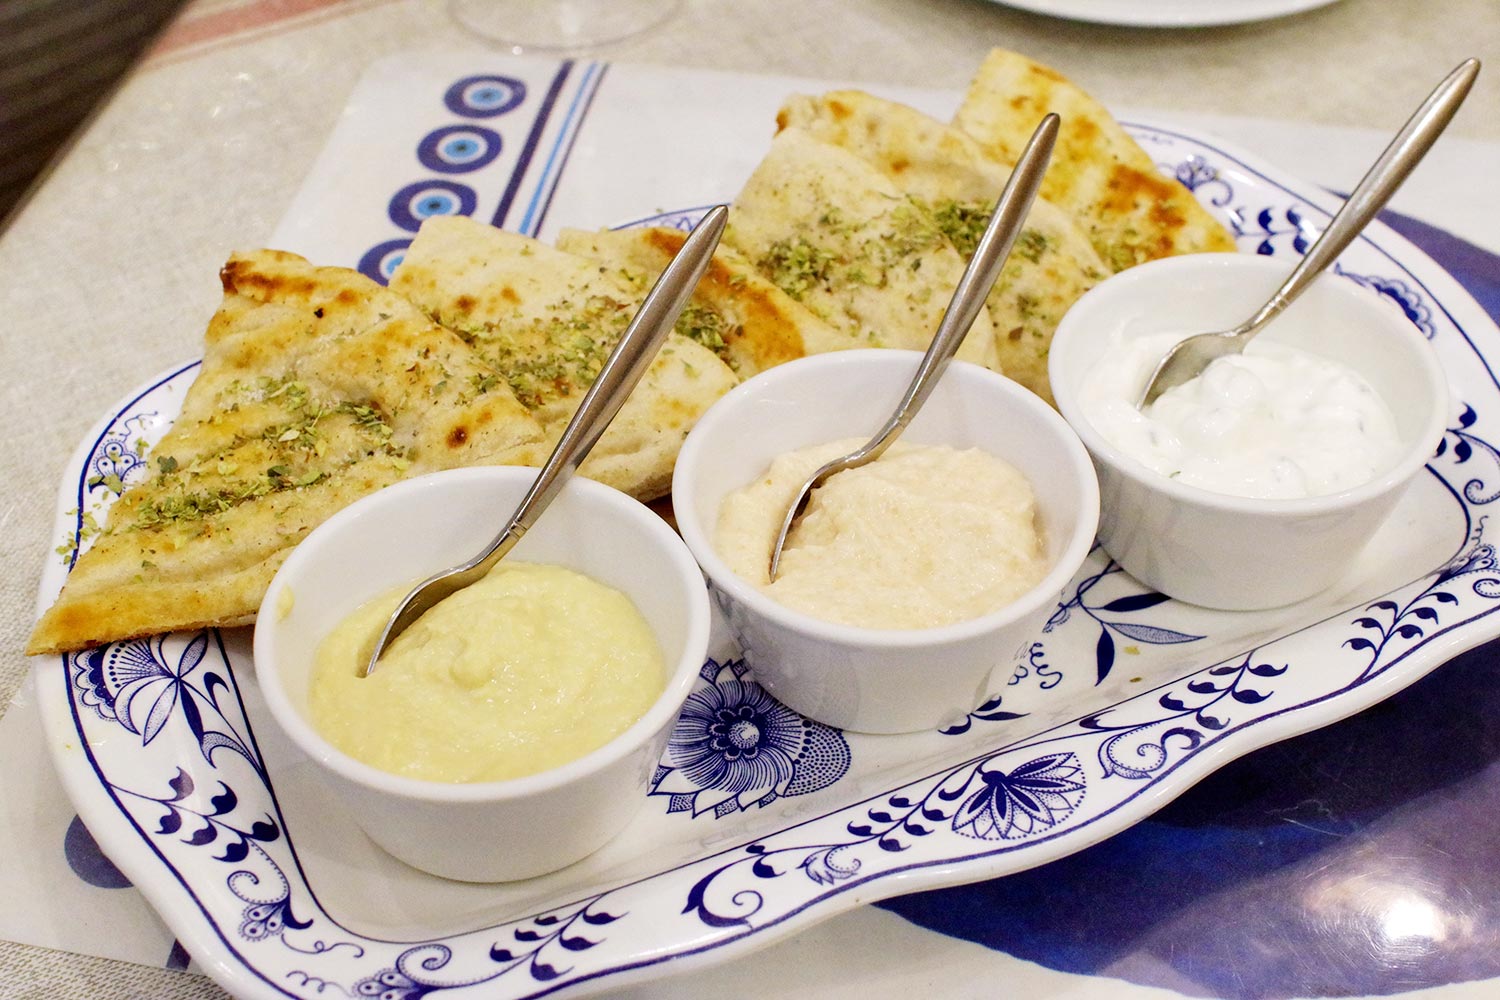 前菜盛り合わせは、ザジキ（ギリシャヨーグルトのディップ）、タラモサラダ、フムス（ひよこ豆のペースト）の3点と、ピタ（平焼きパン）のセット。